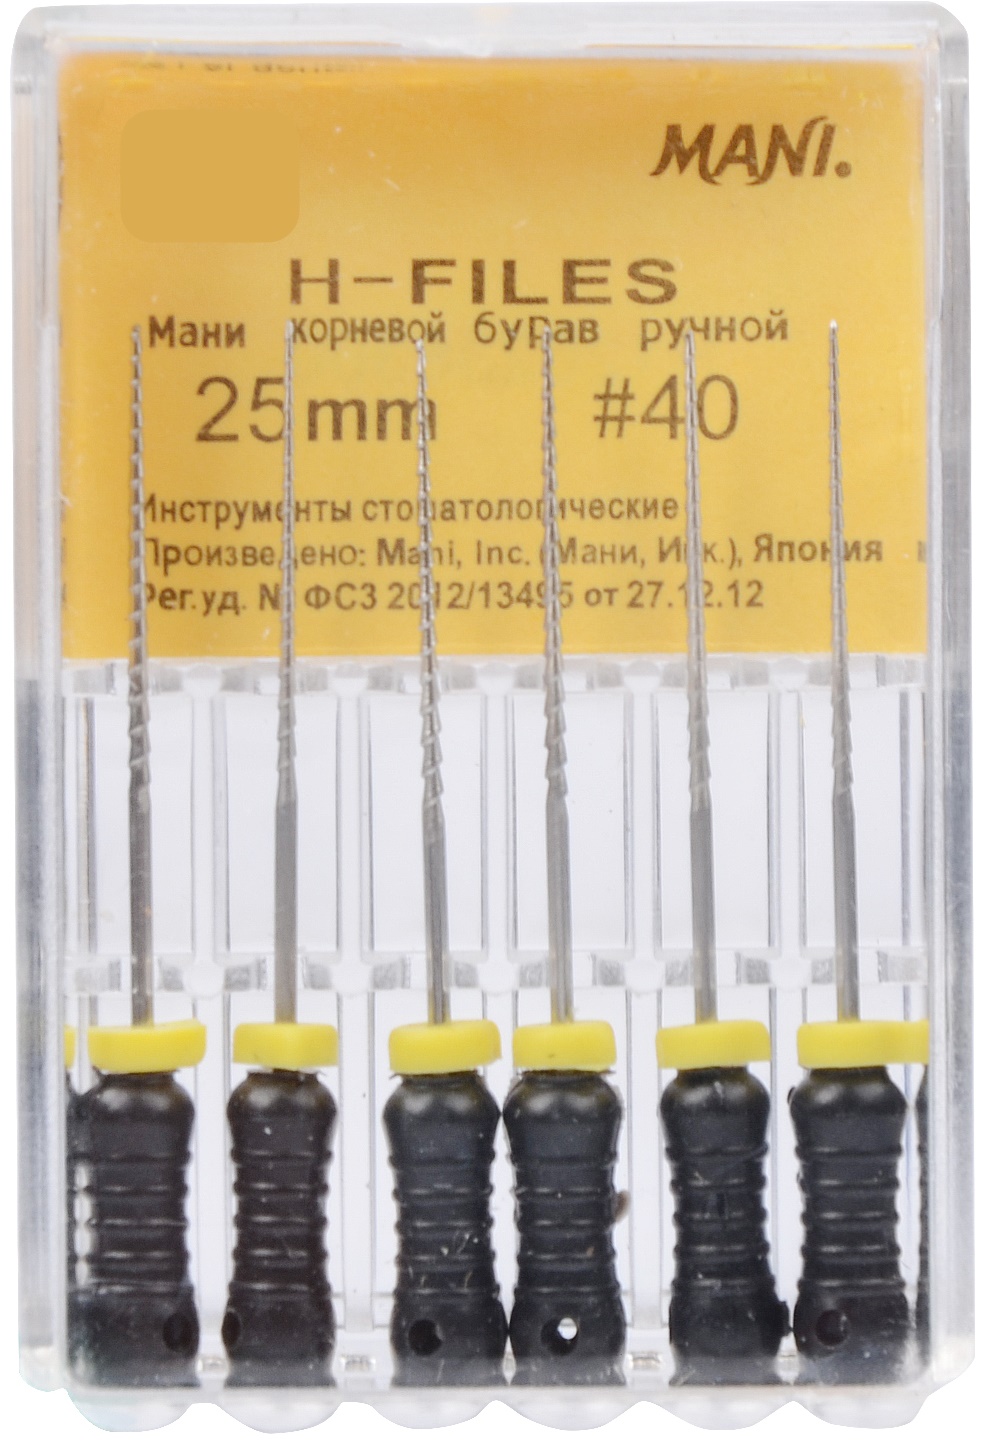 H-File 25mm #40 - Mani